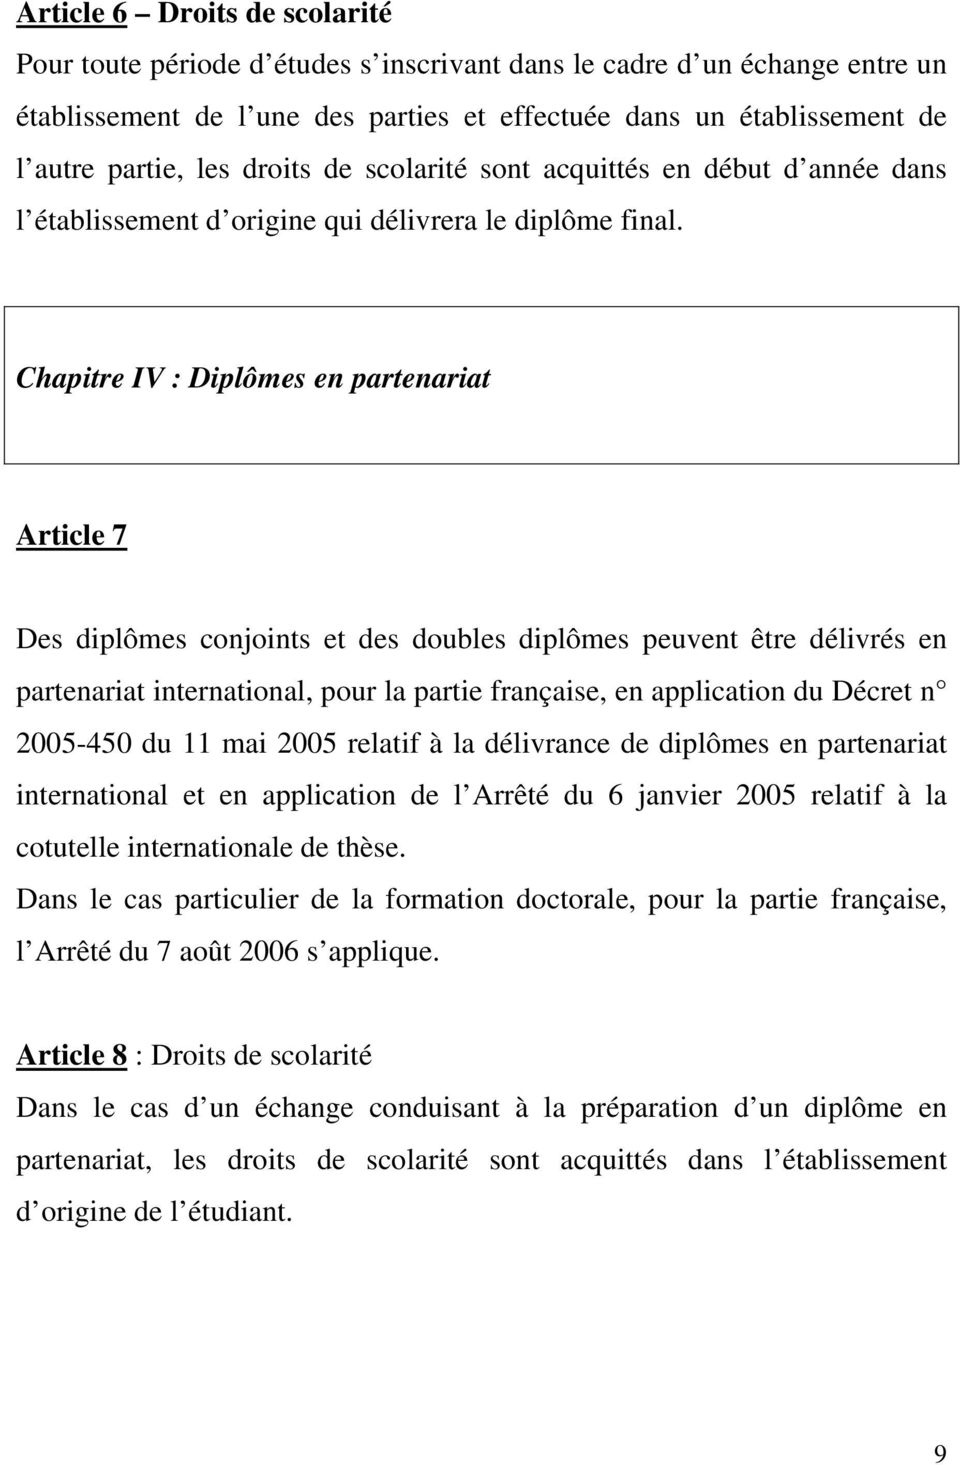 Chapitre IV : Diplômes en partenariat Article 7 Des diplômes conjoints et des doubles diplômes peuvent être délivrés en partenariat international, pour la partie française, en application du Décret n